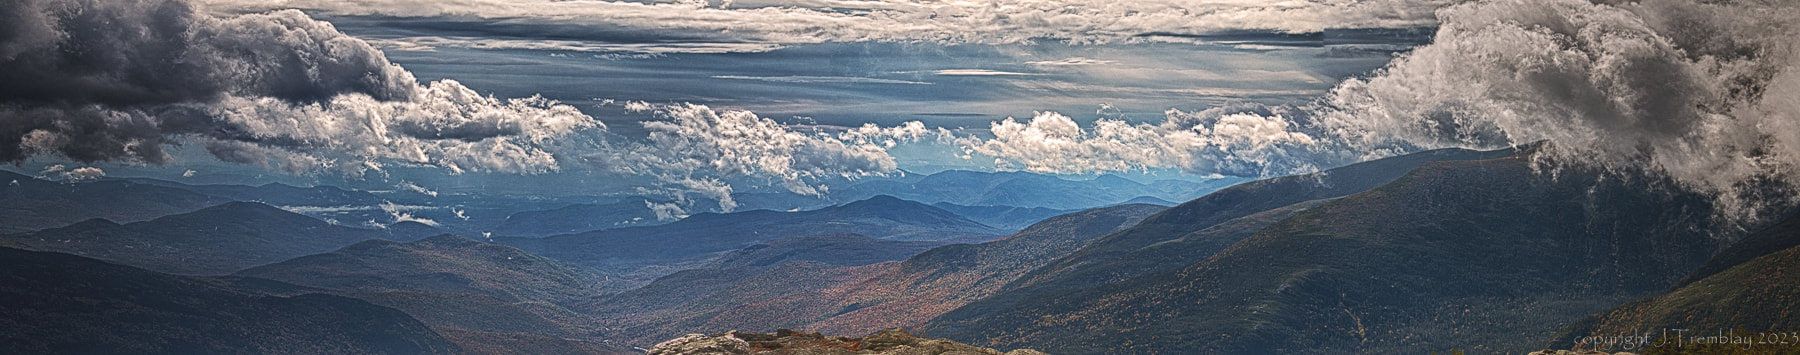 mountain view, landscape, clouds, Mount Washington, Canon